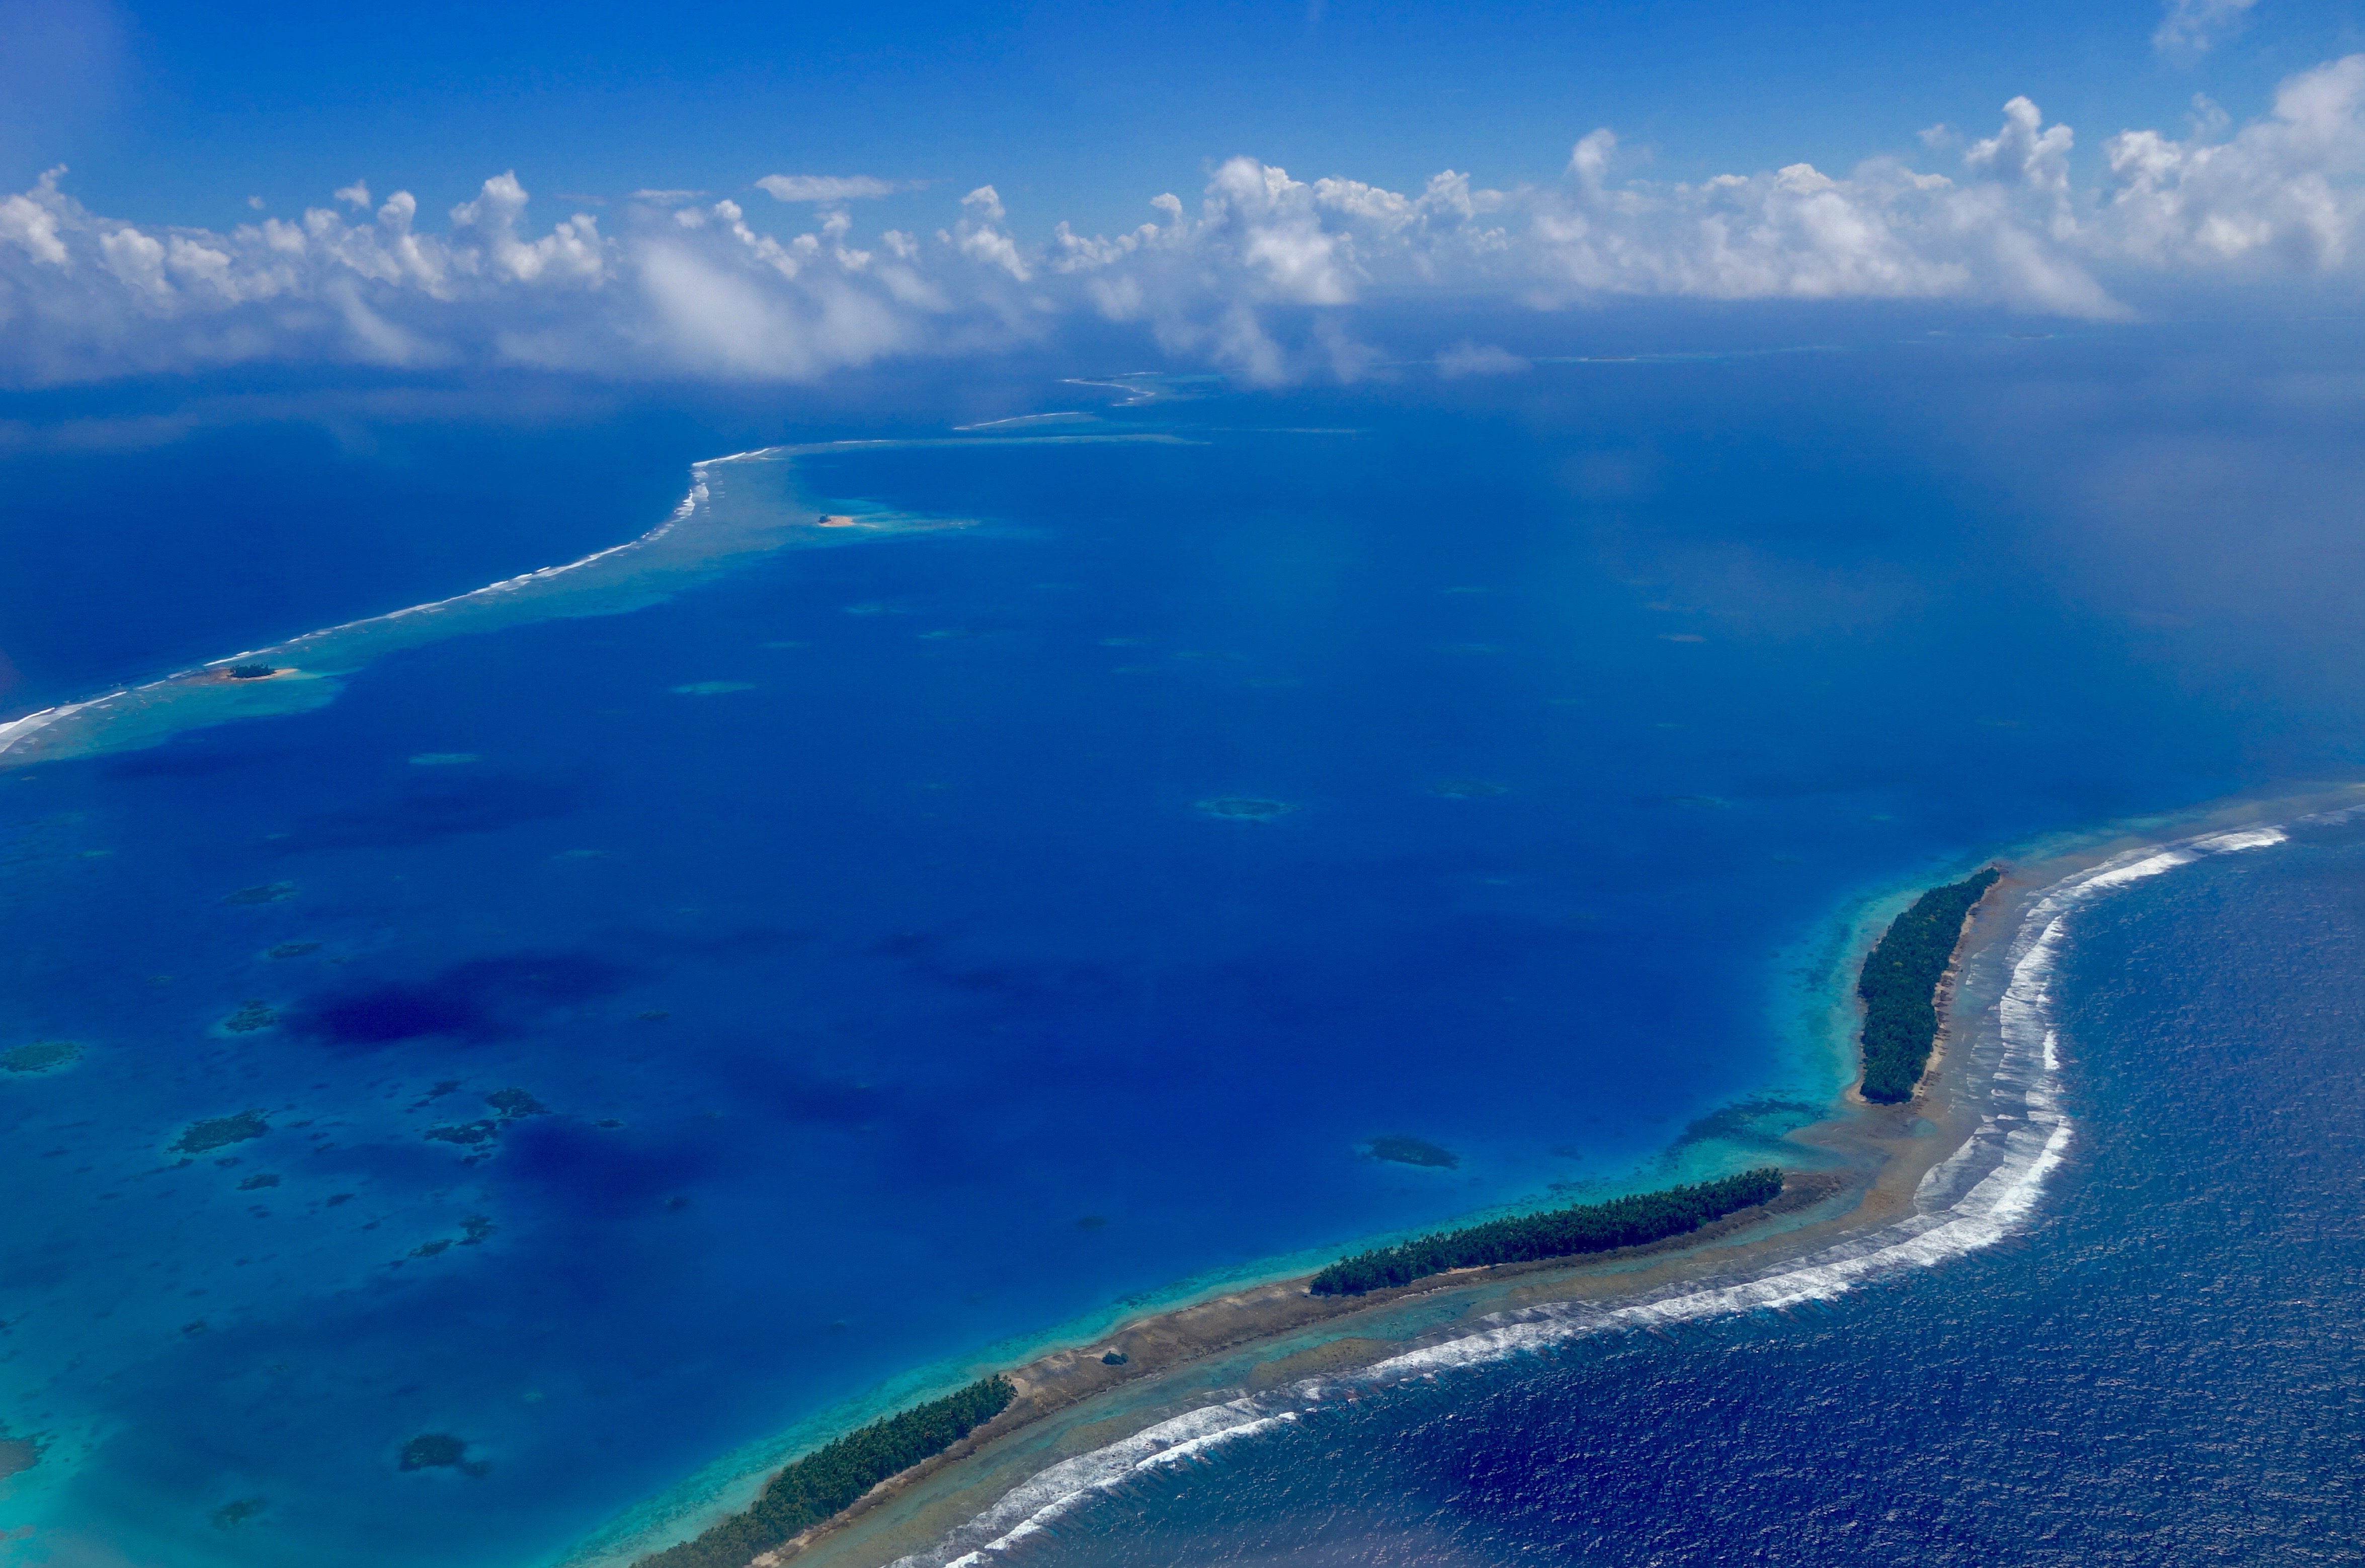 Млн тихого океана. Остров Фунафути, Тувалу. Атолл Тувалу. Полинезийское государство Тувалу. Атолл в тихом океане.